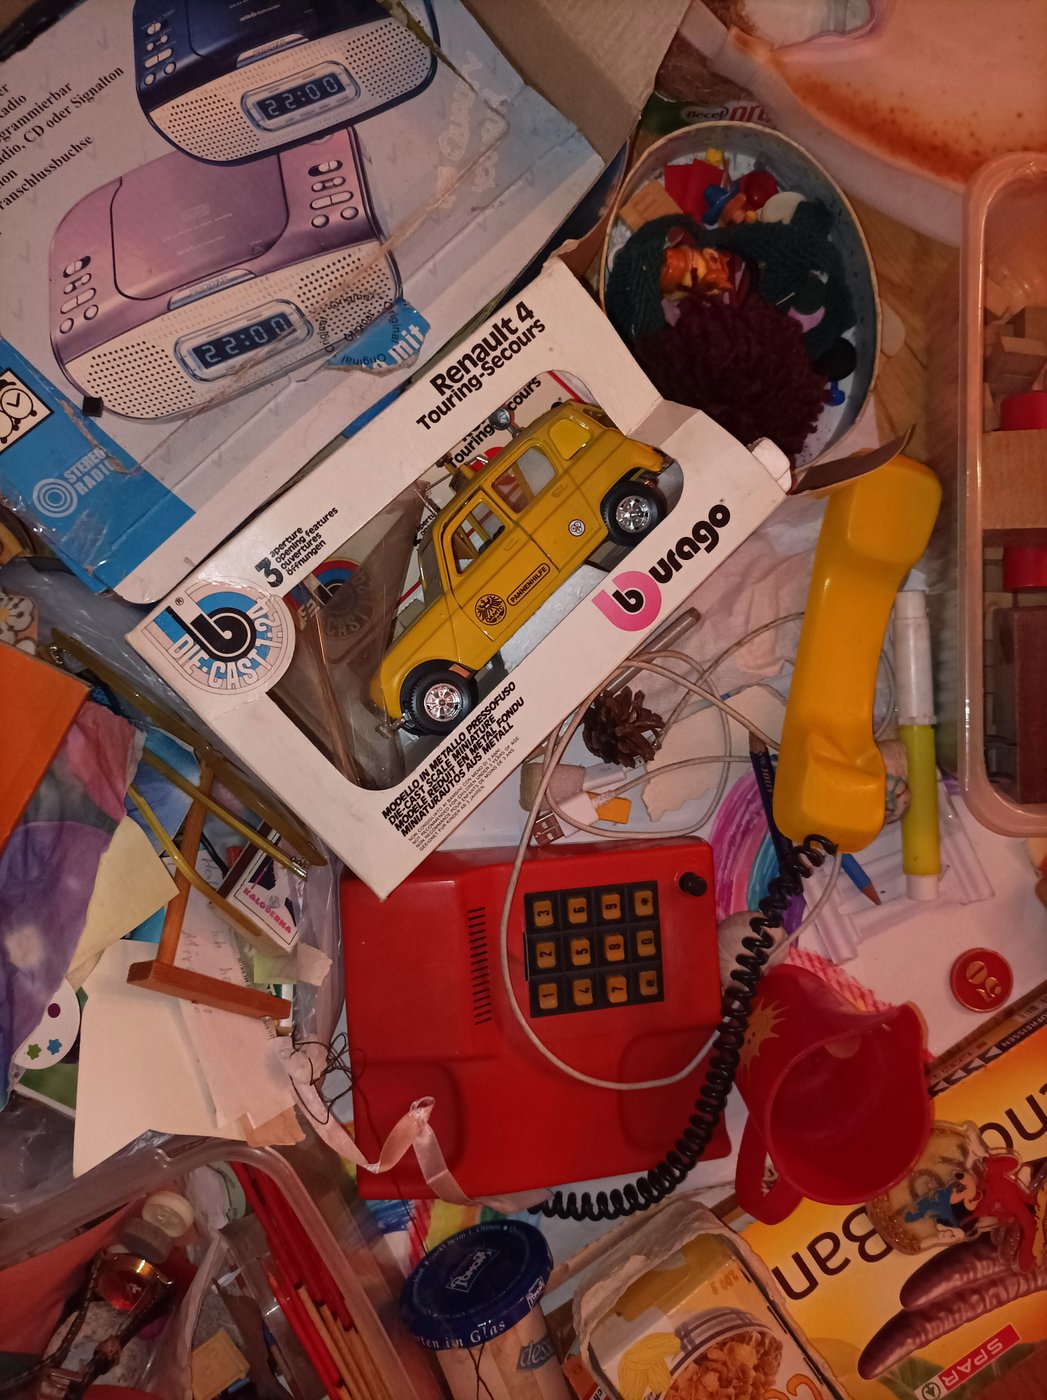 Die Fotografie zeigt ein rotes Spielzeugtelefon, ein gelbes Spielzeugauto in der Verpackung mit der Aufschrift "Renault 4", die Verpackung eines Radioweckers auf dem ein Blauer und rosafarbiger Radiowecker abgebildet ist, rund herum liegen Stifte und Papier und anderer Kram neben einer Packung Schokobananen und einem roter Trinkbecher